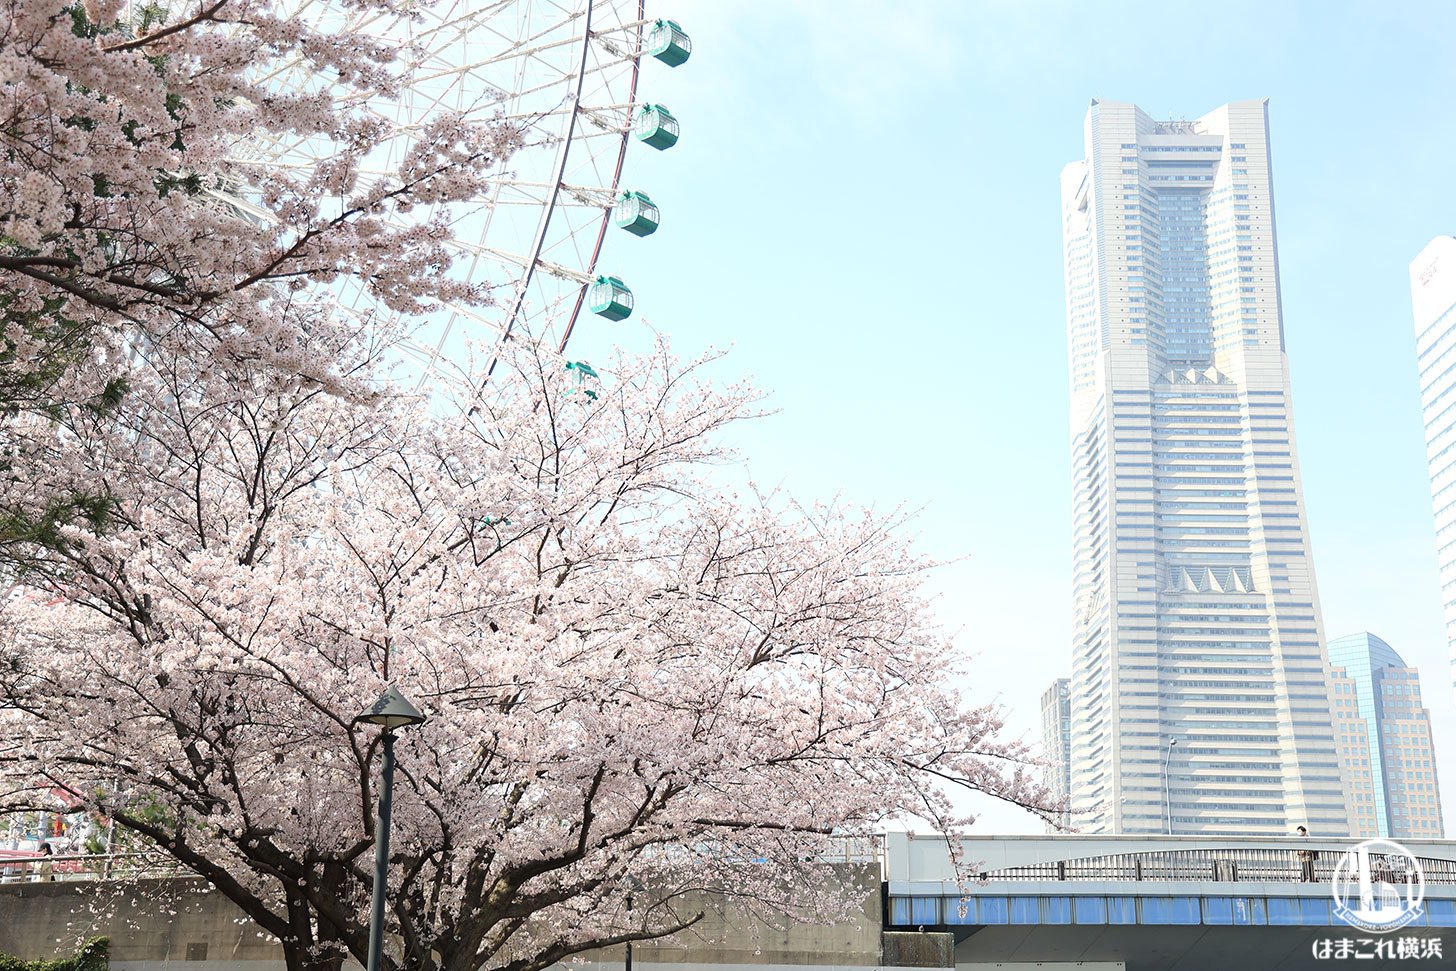 2022年 新港パークで撮った満開の桜と横浜ランドマークタワー・大観覧車